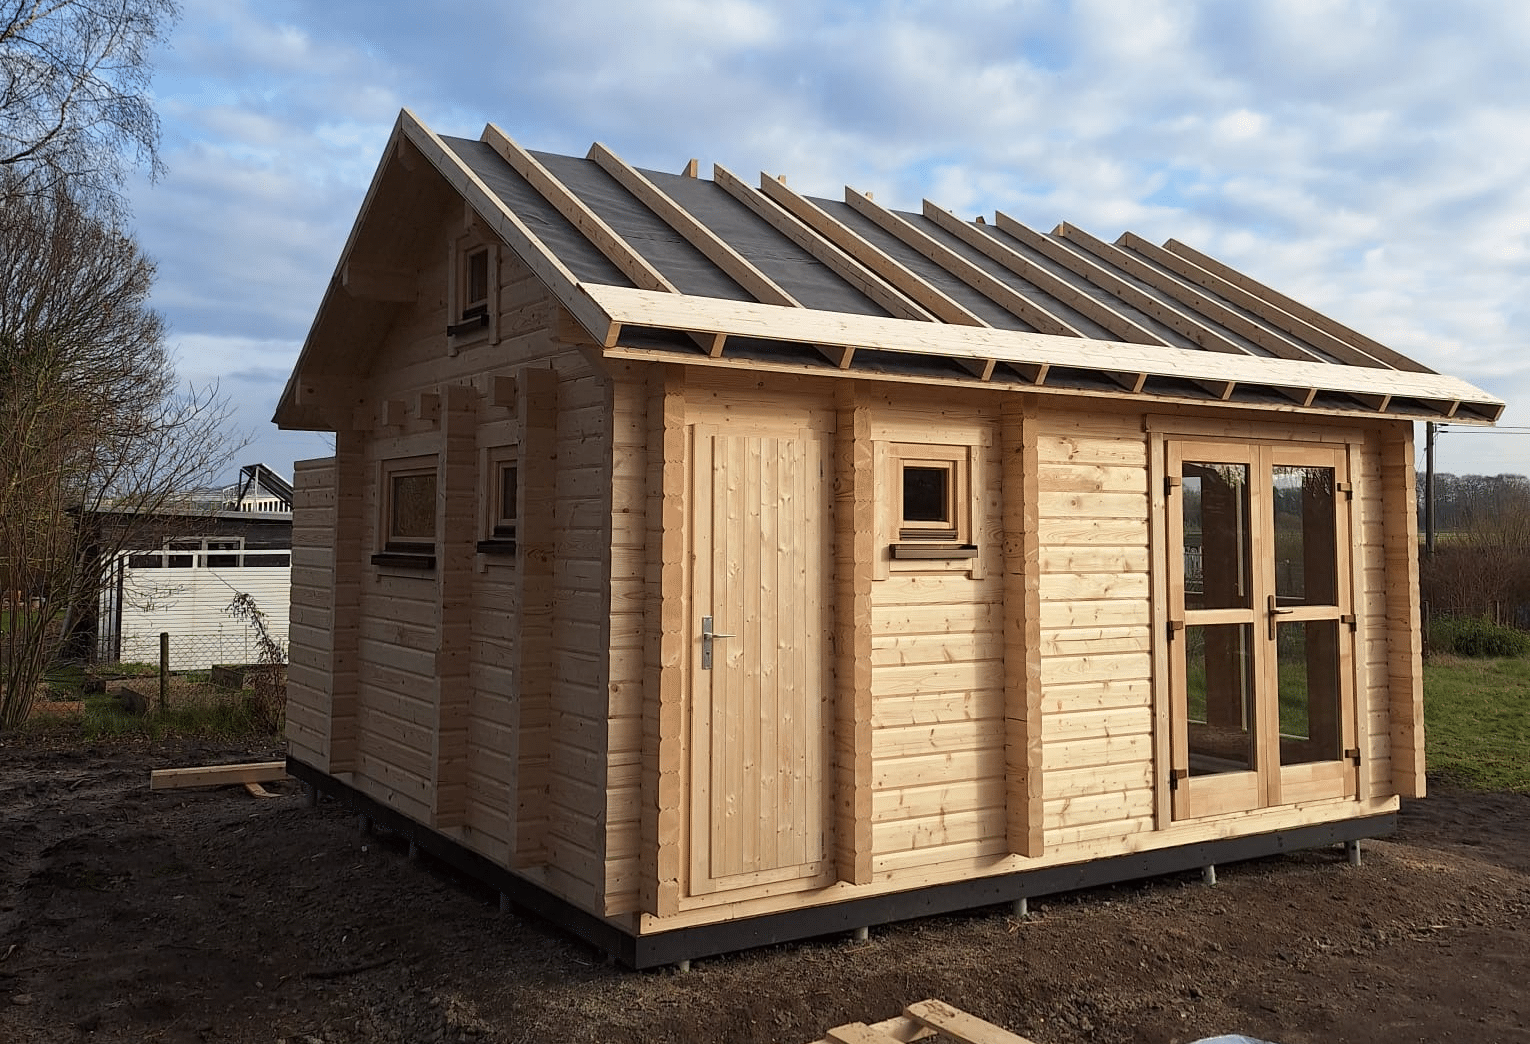 Ein kleines, im Bau befindliches Holzblockhaus mit unvollständiger Überdachung und klarem Himmel im Hintergrund.